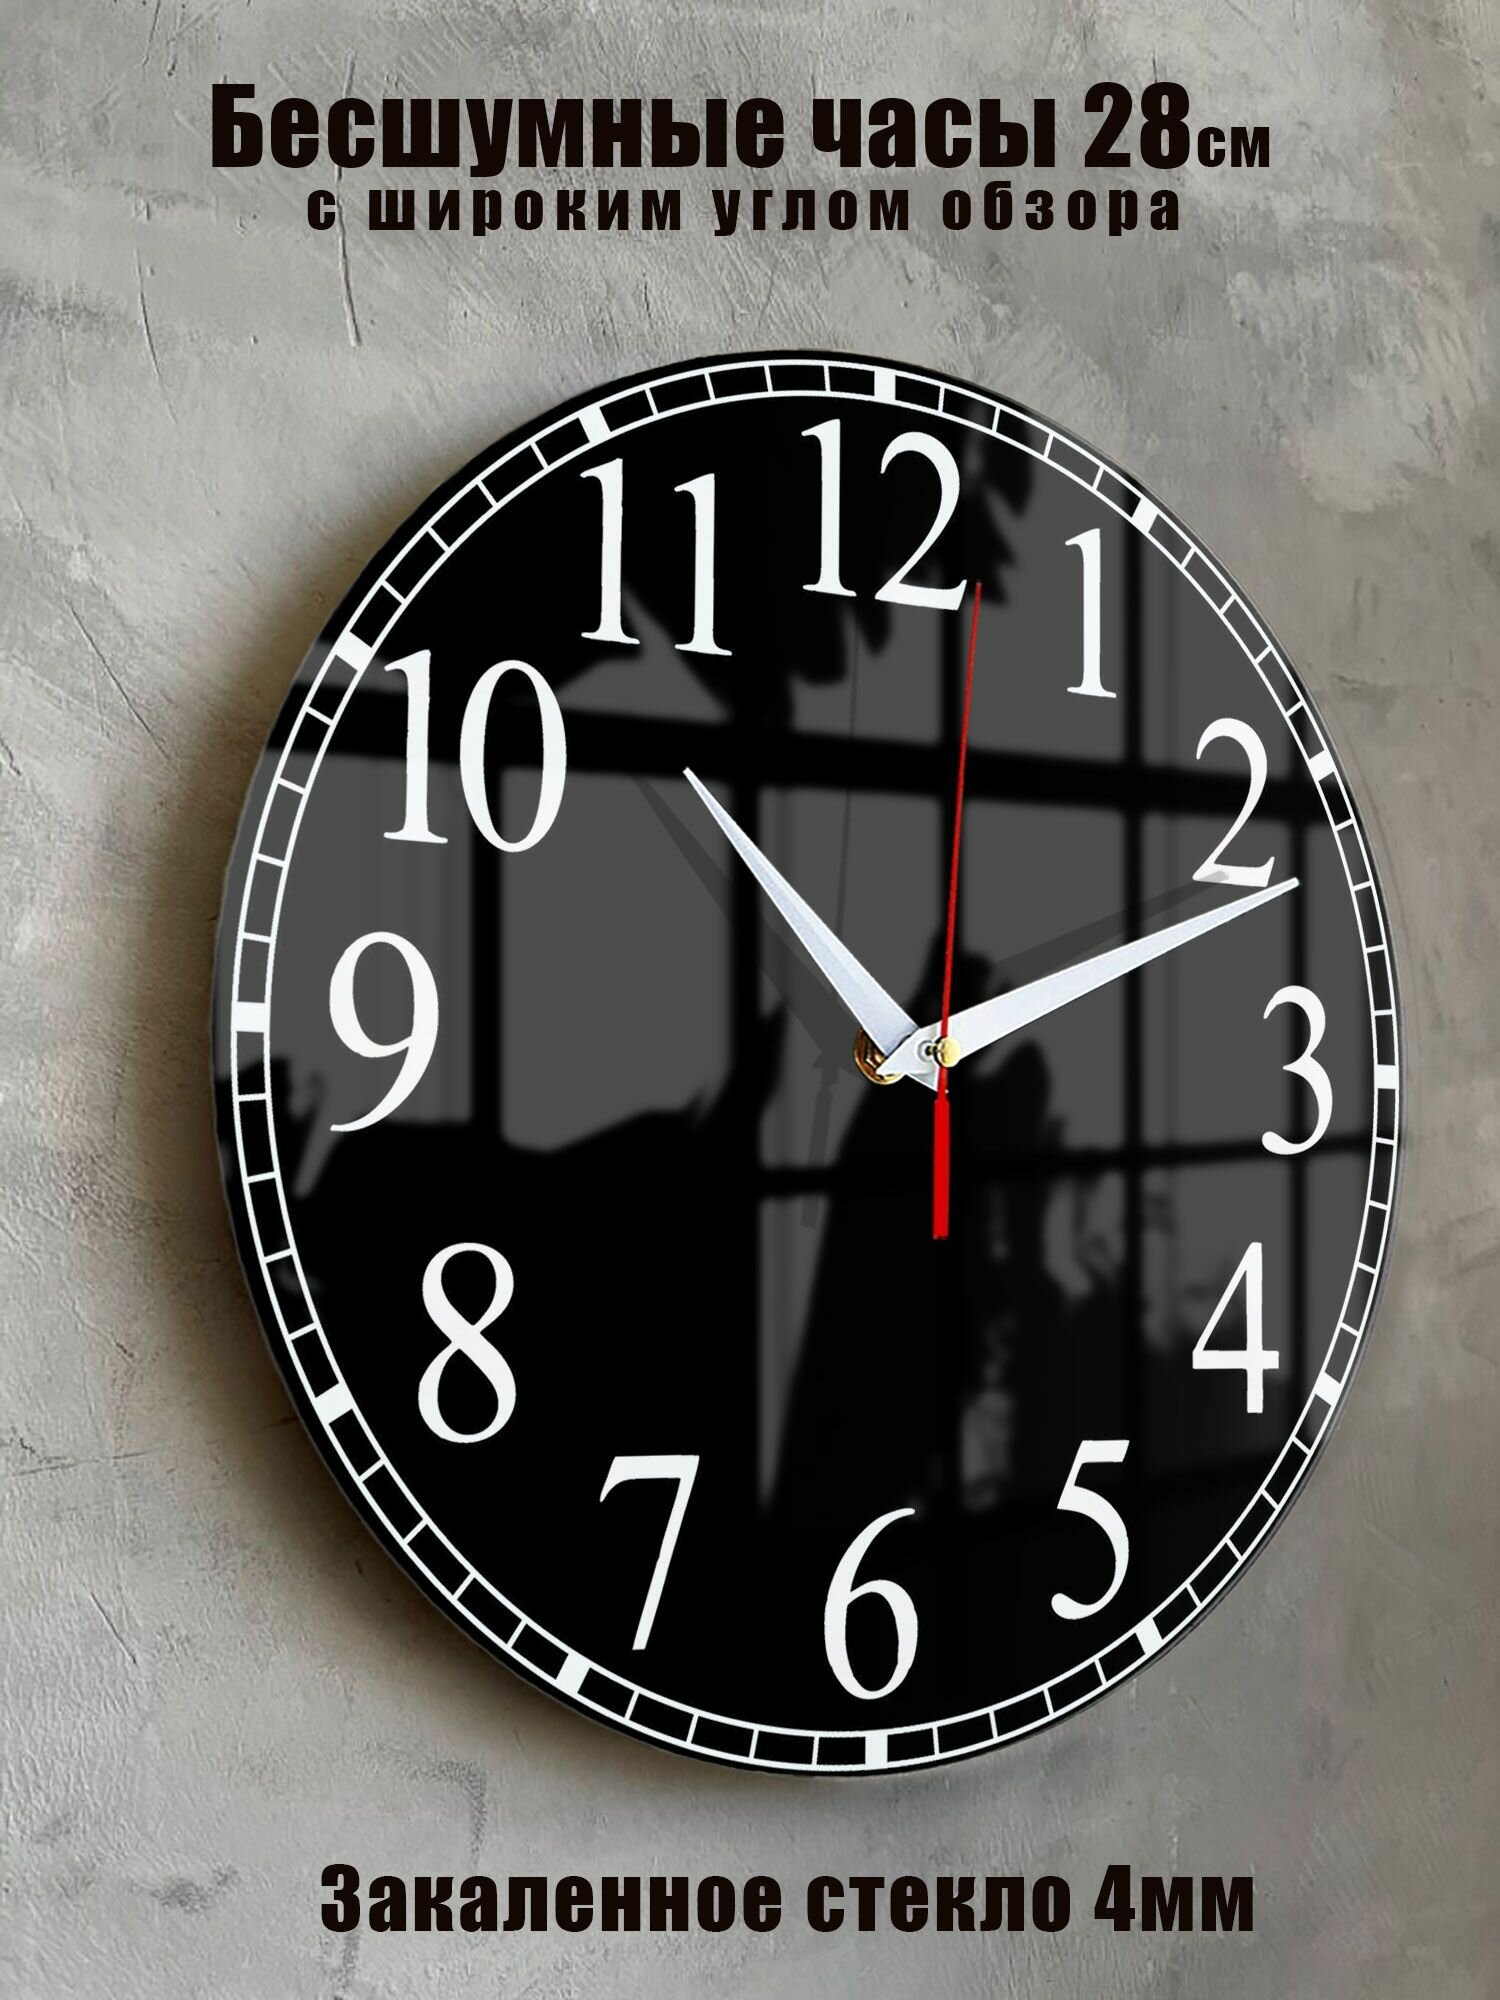 Часы настенные бесшумные большие на кухню на стену Черные Четкие цифры "Часовой завод идеал" часы кухонные настенные интерьерные настенные часы